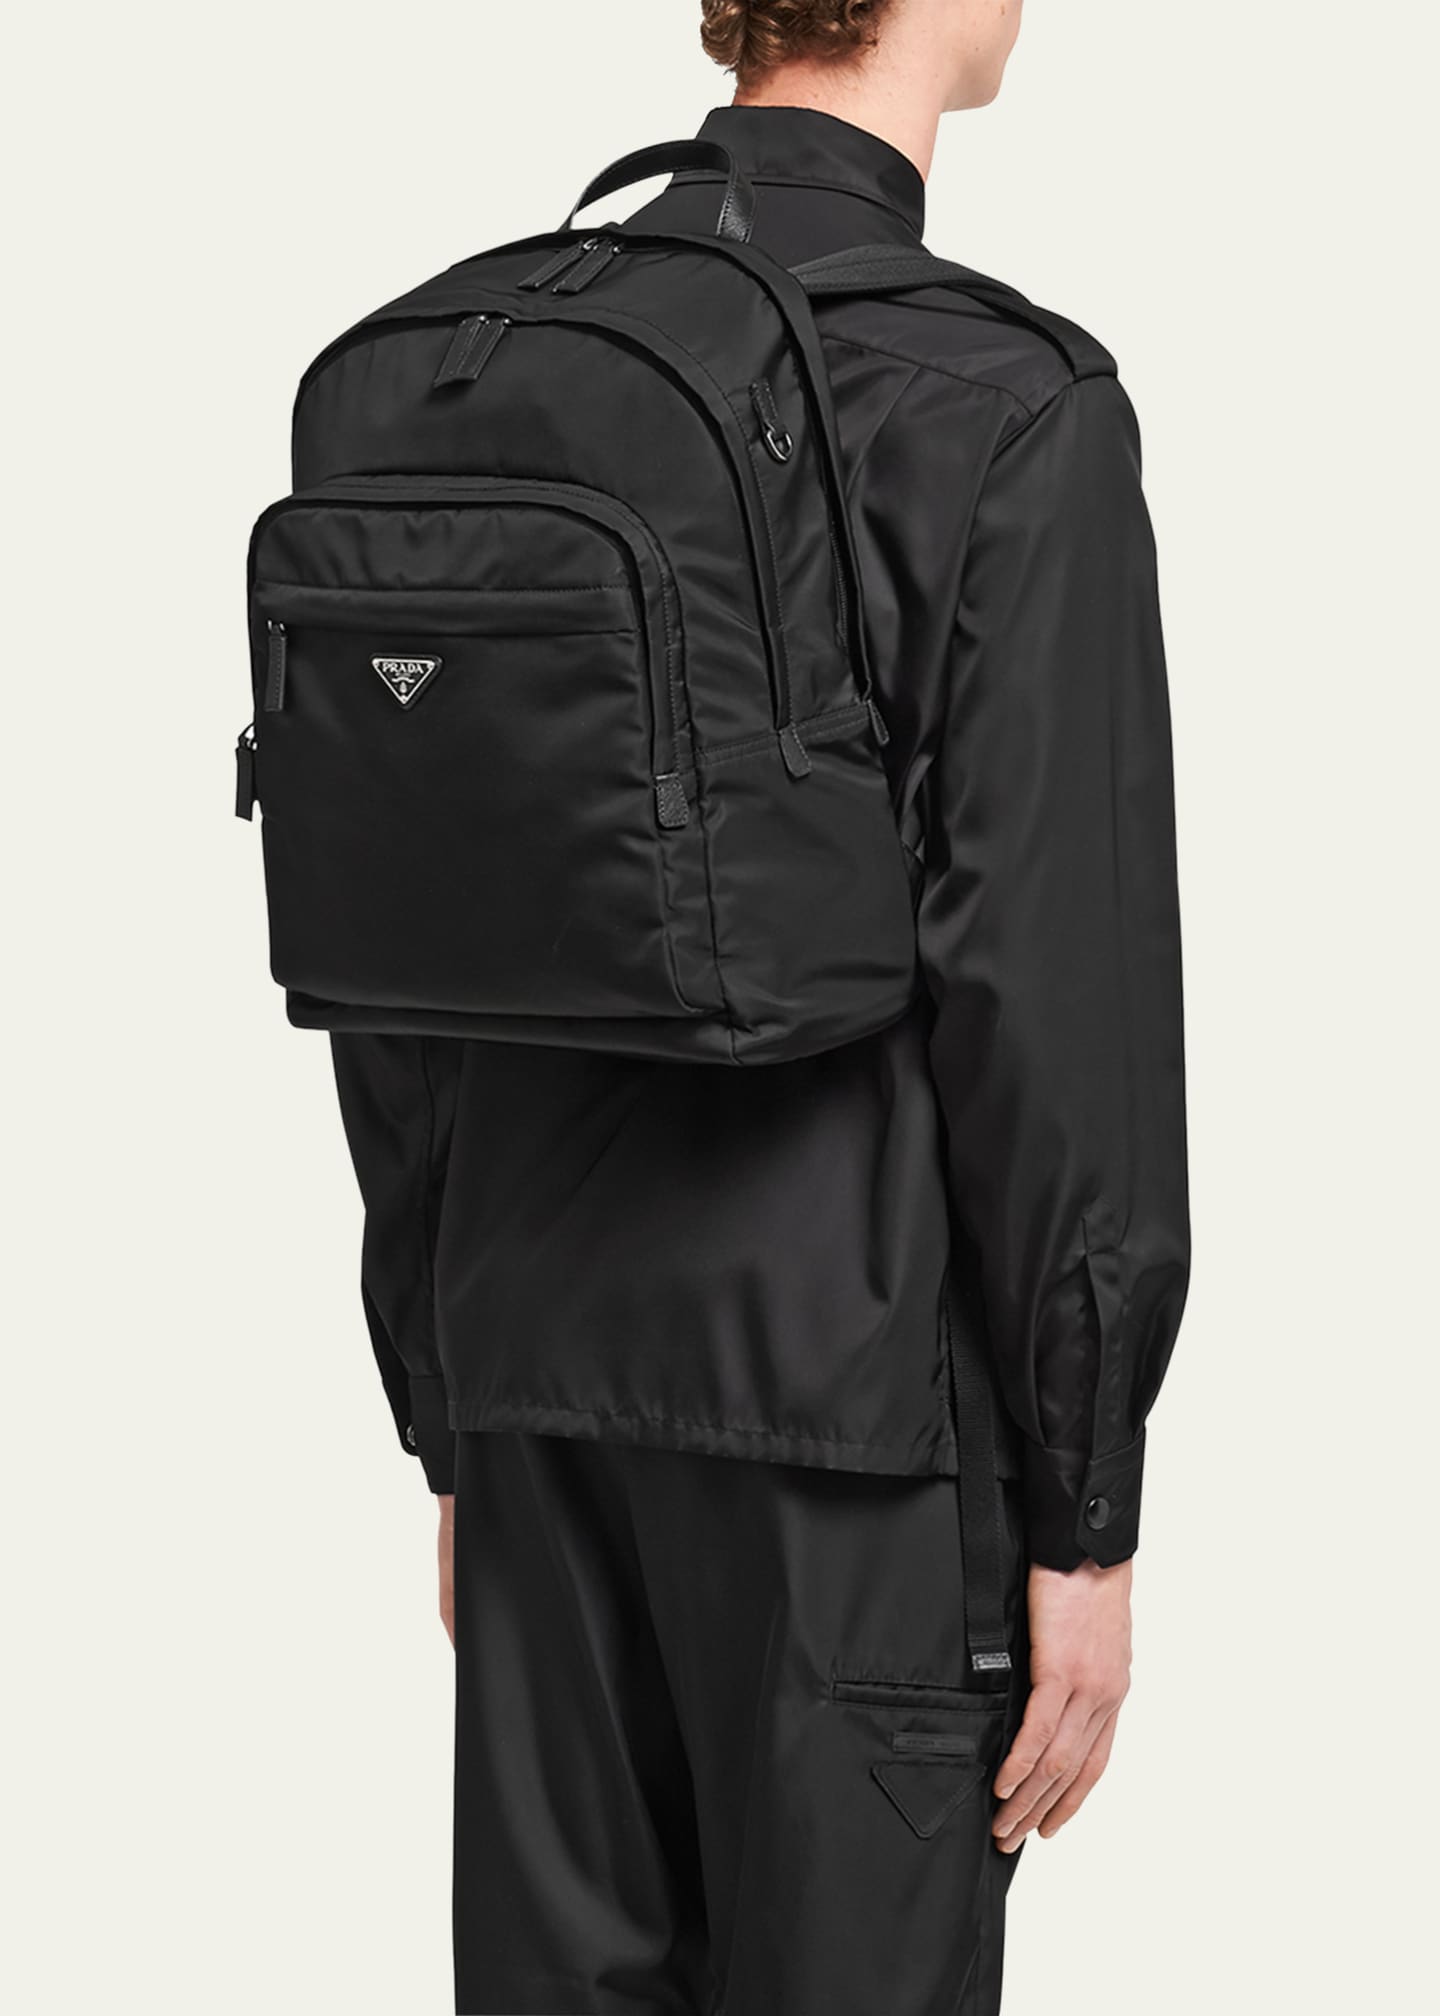 Men's Prada Bags & Backpacks